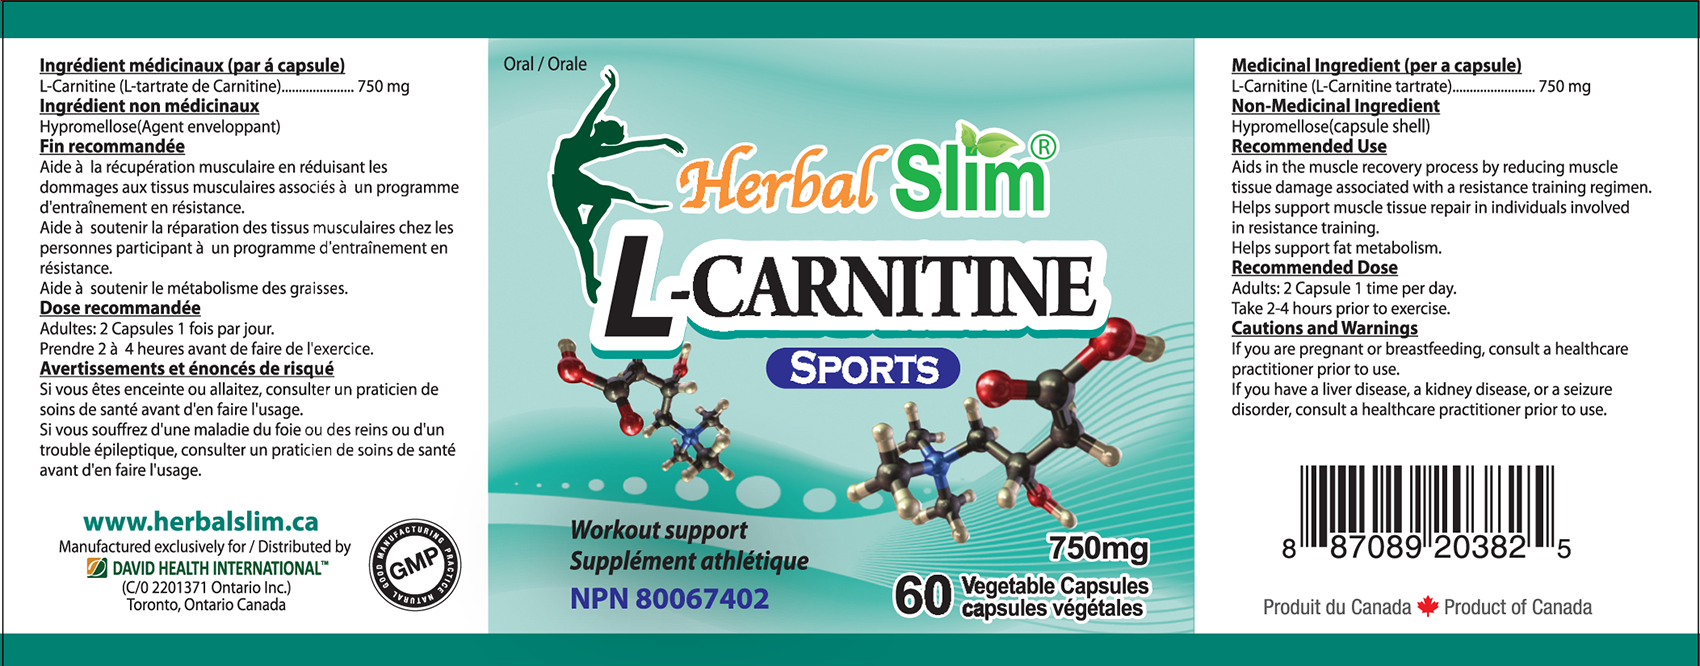 HerbalSlim_L-Carnitine"